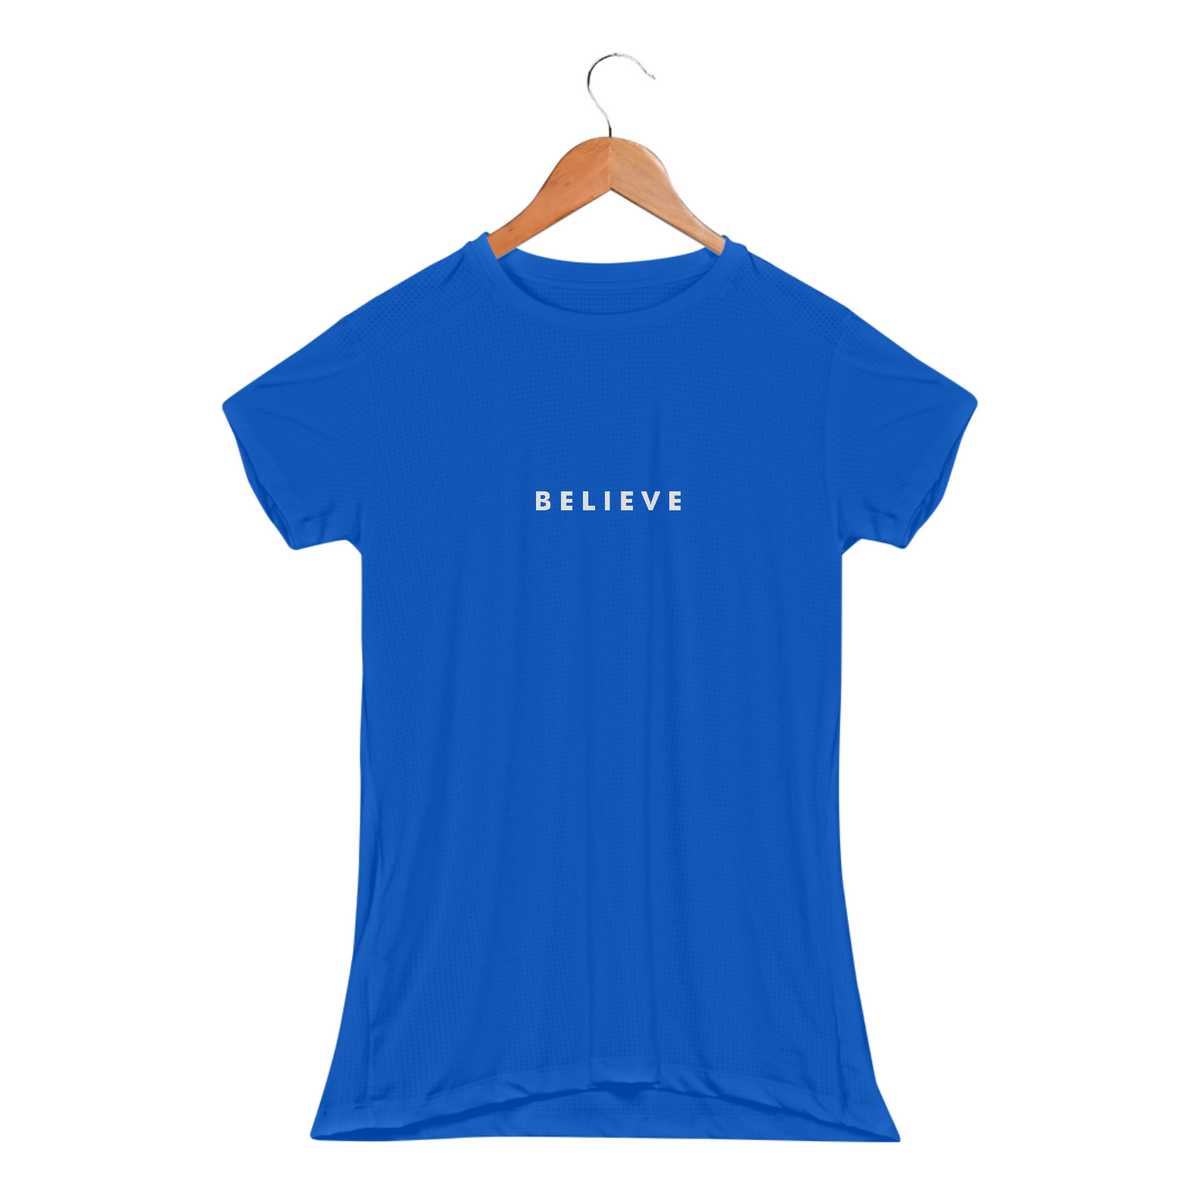 Nome do produto: Camisa baby long feminina Dry fit com proteção YV - JITSU - Estampa Believe